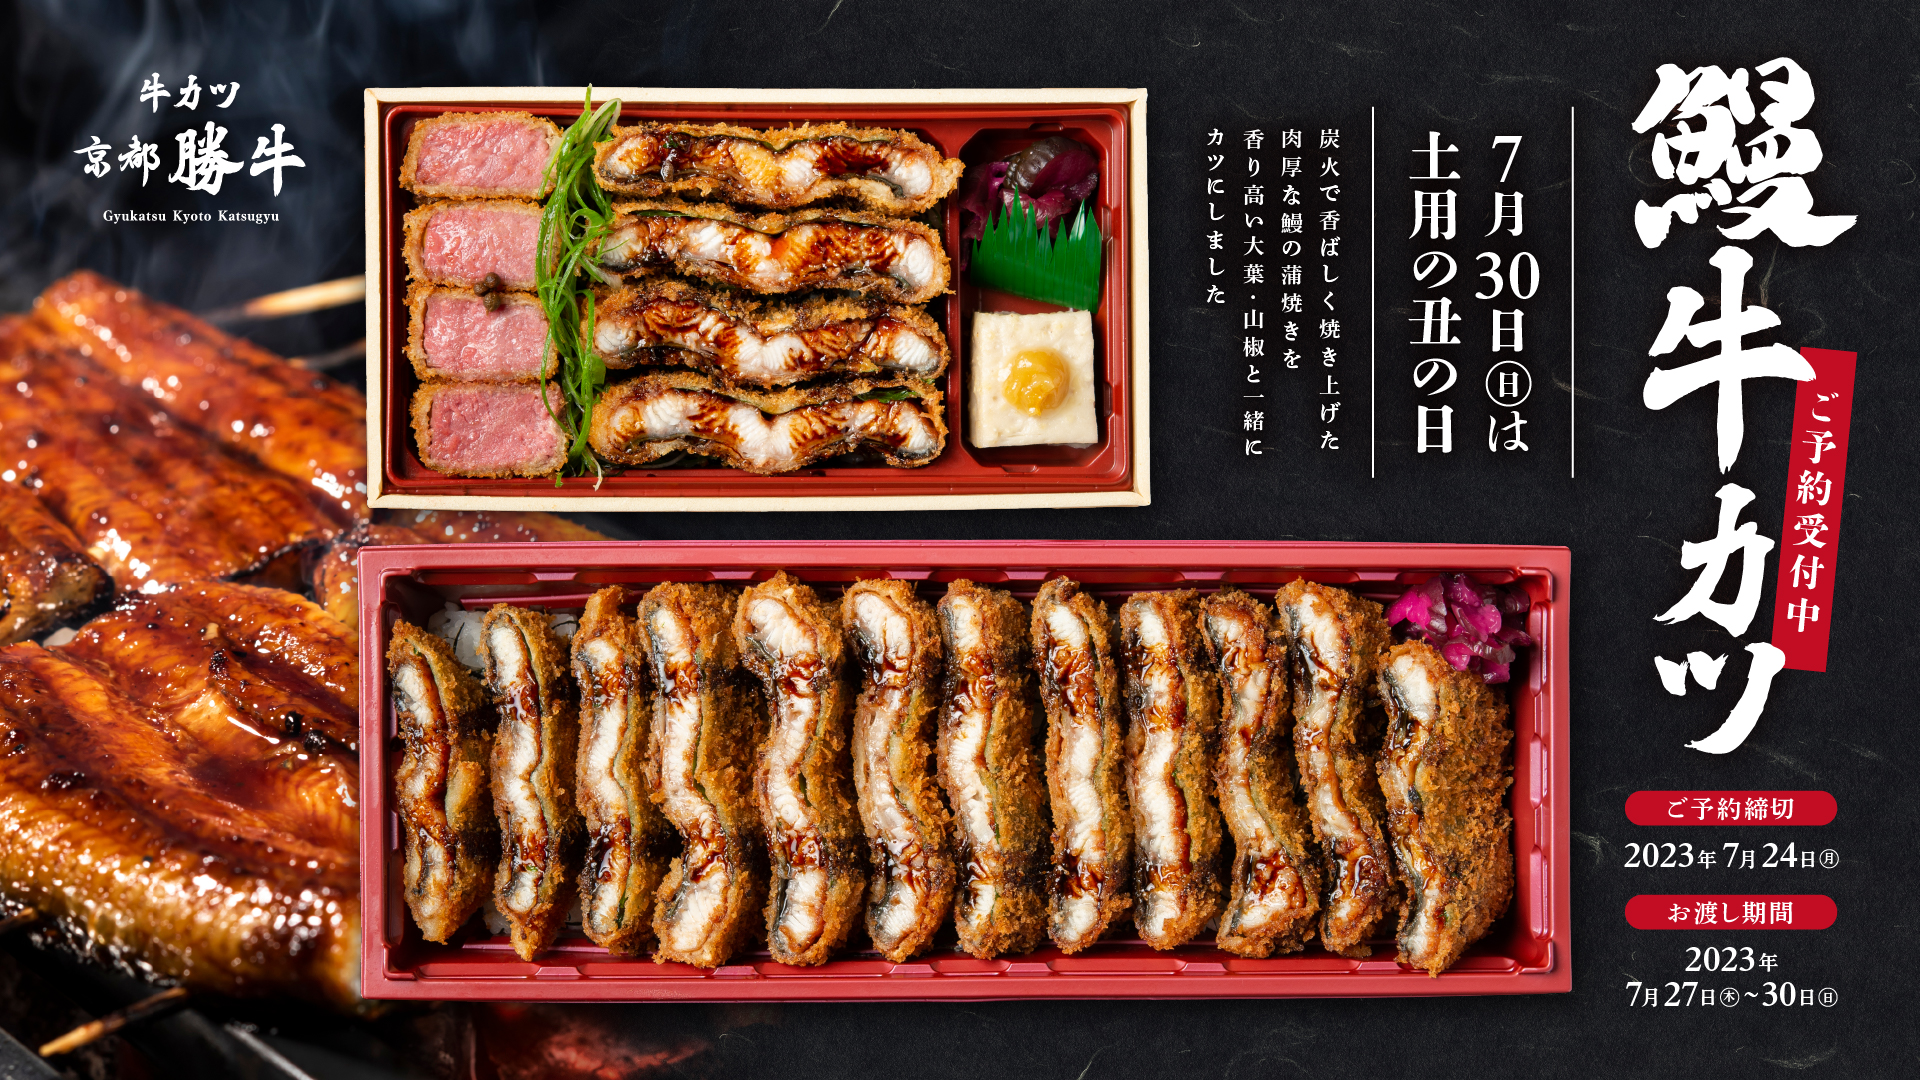 日本京都勝牛推出「土用丑日」期間限定豪華炸牛排鰻魚飯，與全長超過30公分的一本鰻魚炸牛排飯從今日開始接受預訂！